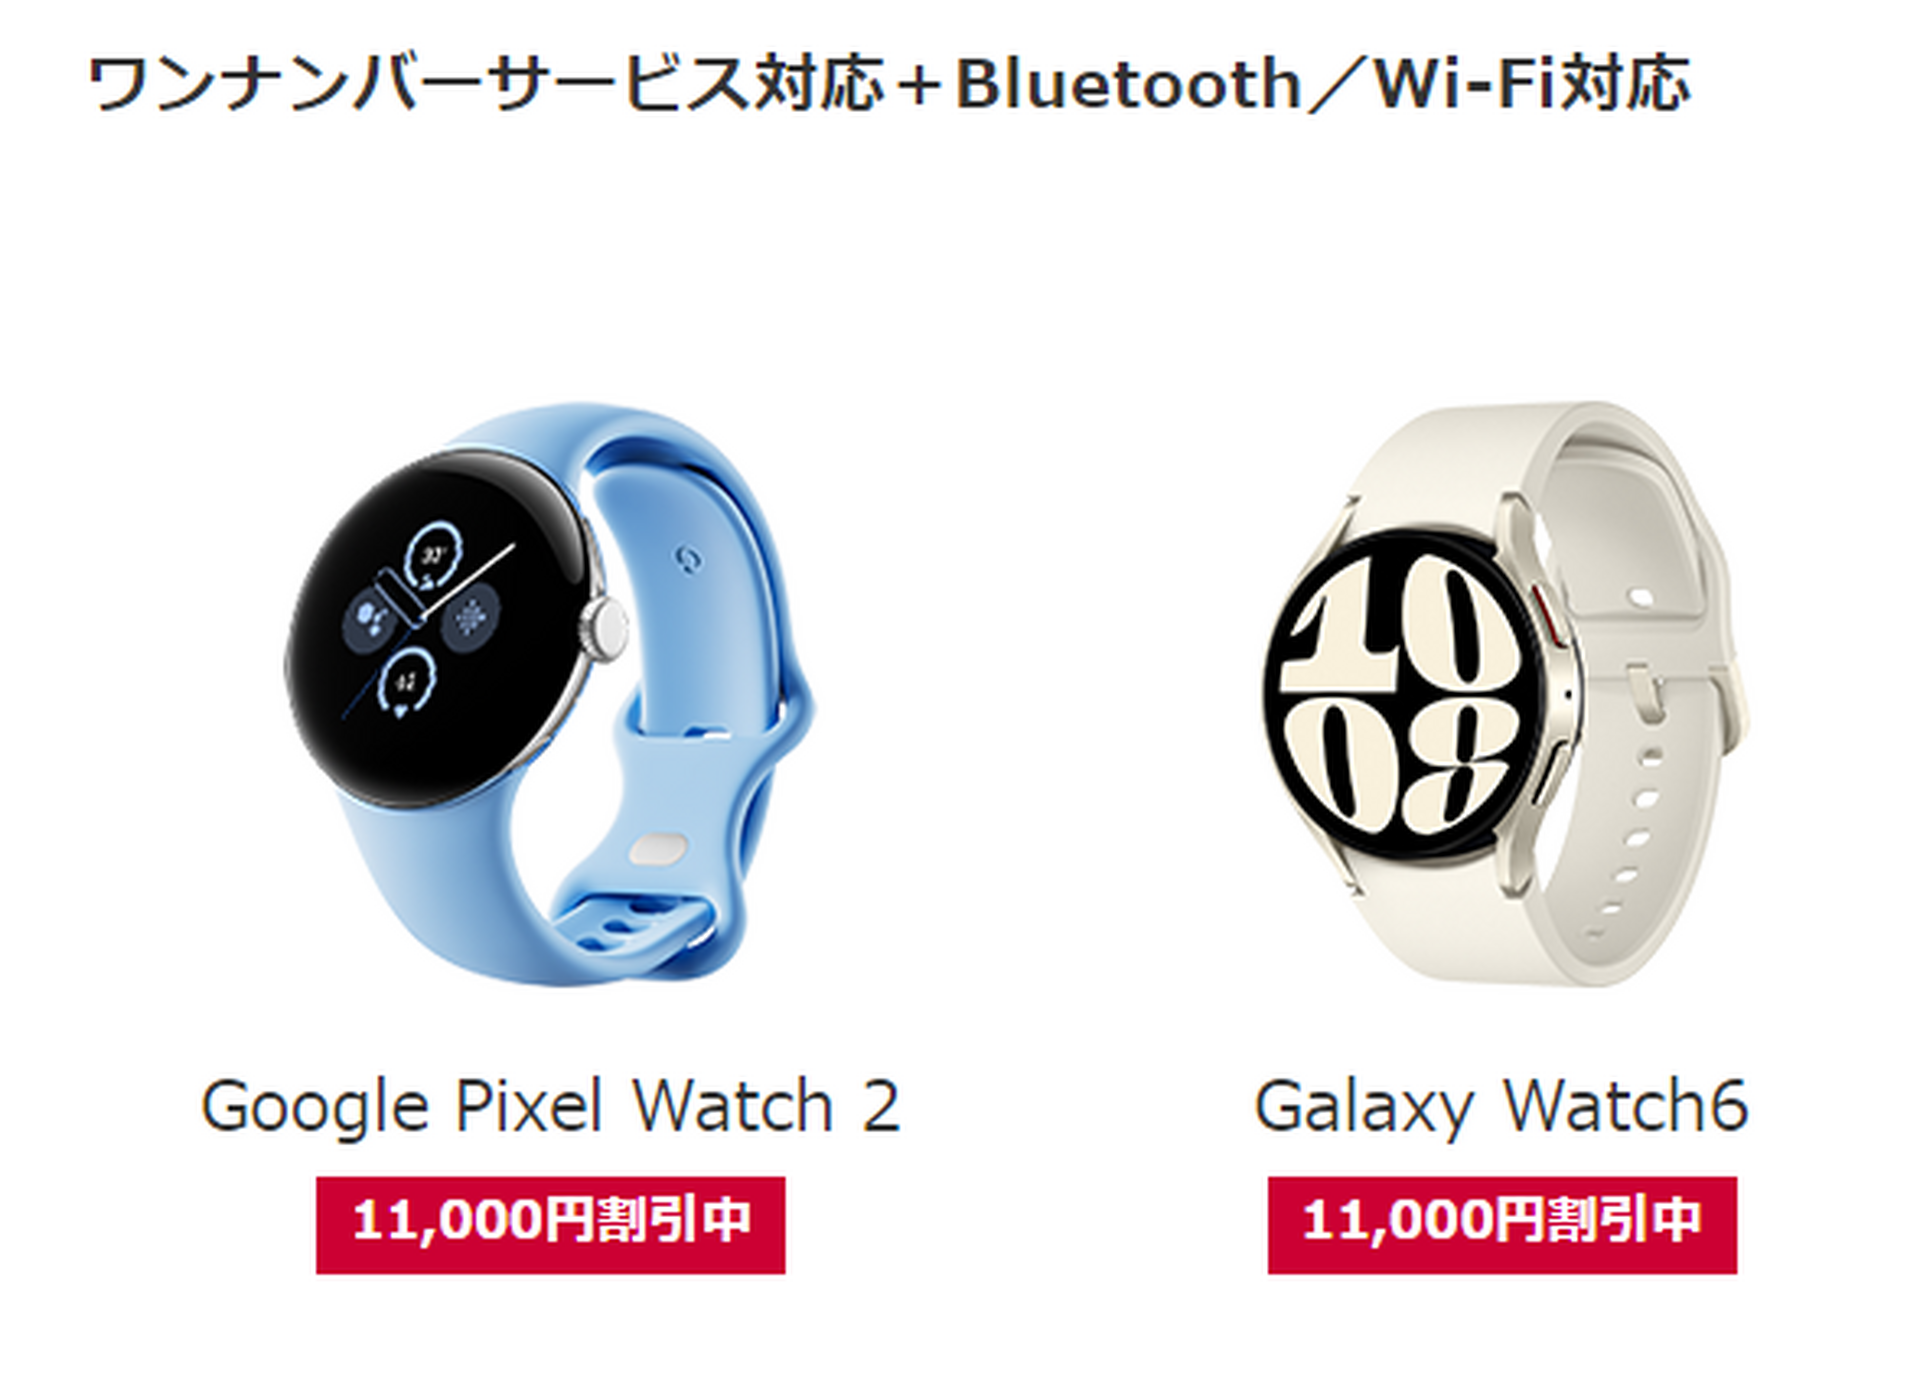 ドコモからPixel Watch 2とGalaxy Watch 6発売。ワンナンバーサービス